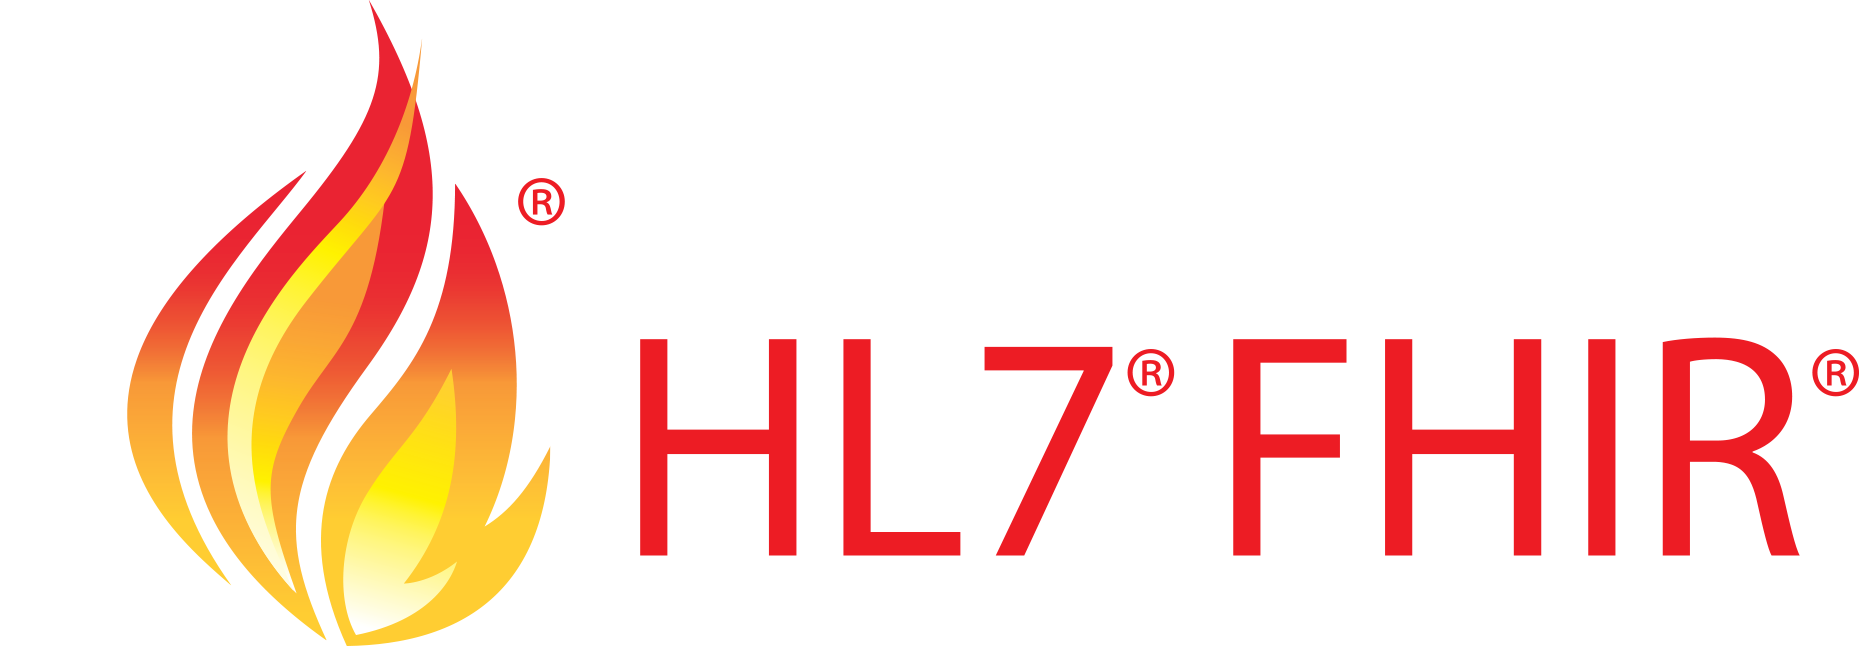 HL7 FHIR